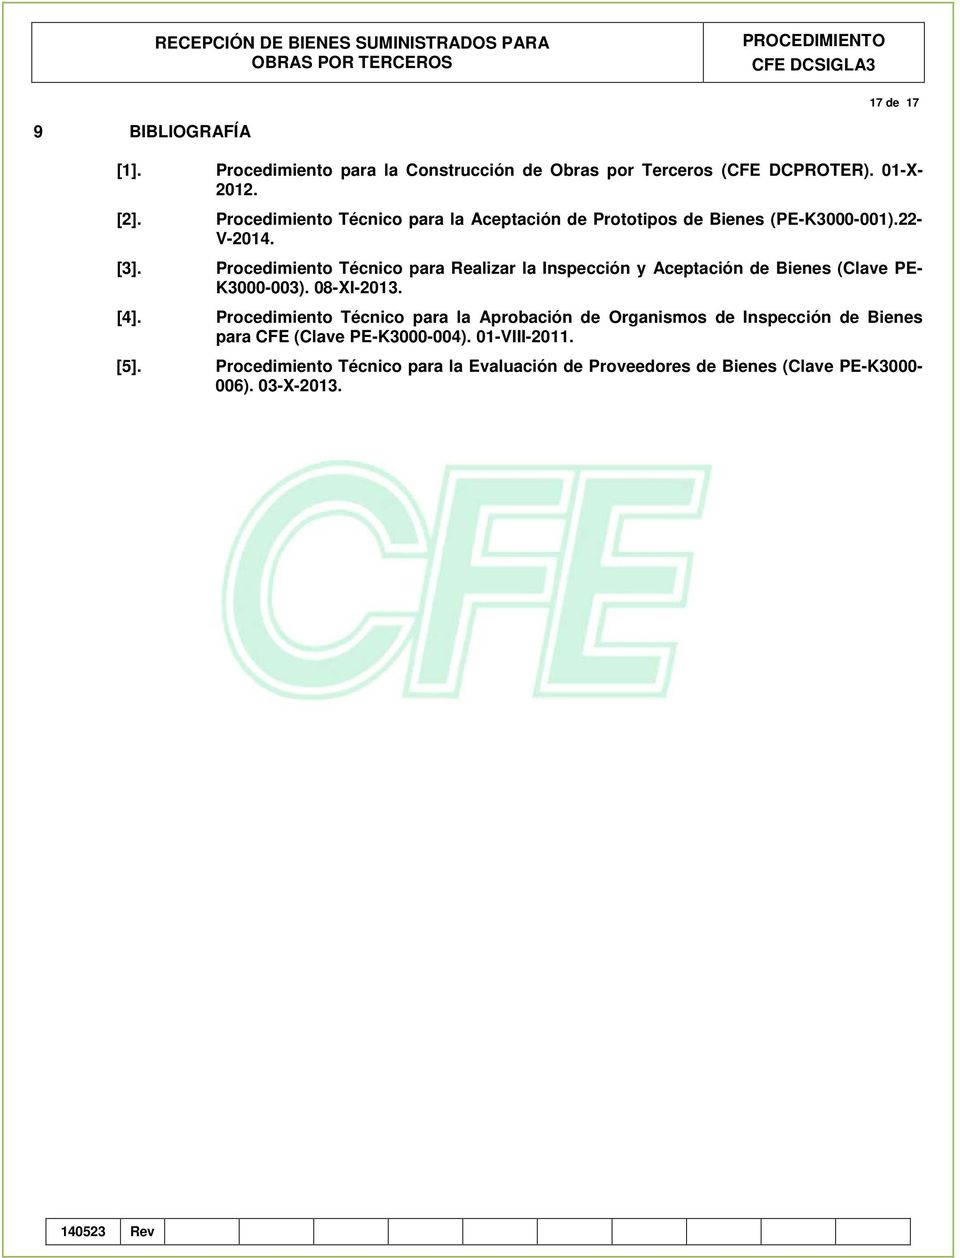 Procedimiento Técnico para Realizar la Inspección y Aceptación de Bienes (Clave PE- K3000-003). 08-XI-2013. [4].